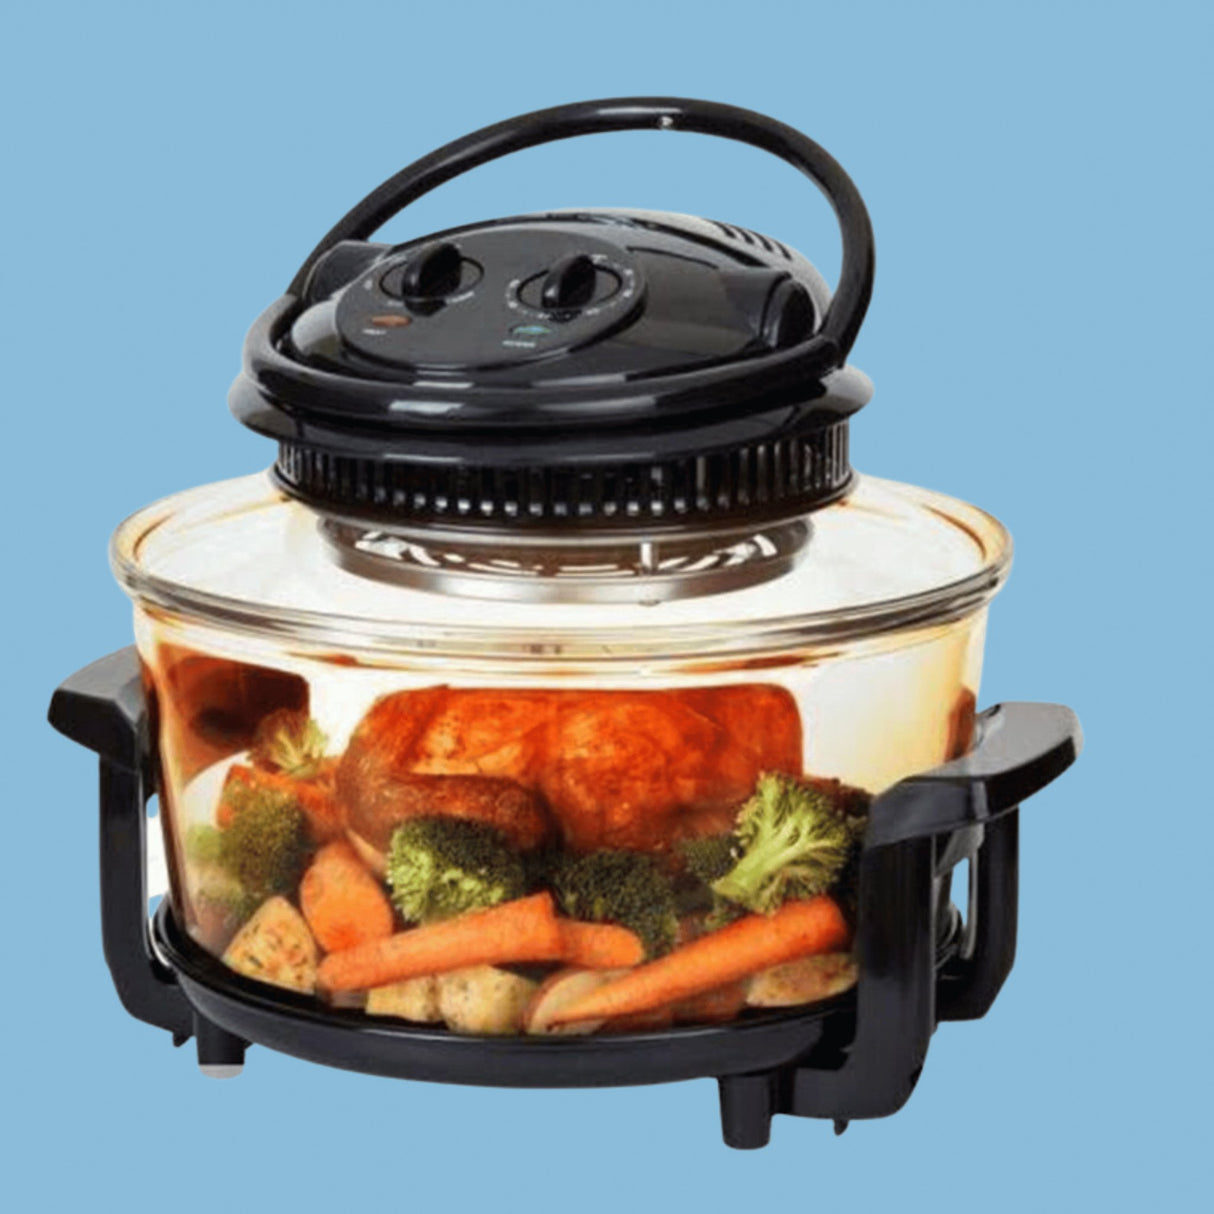 Sonifer 13L, 8 in 1 Halogen Microwave Oven - Black - KWT Tech Mart